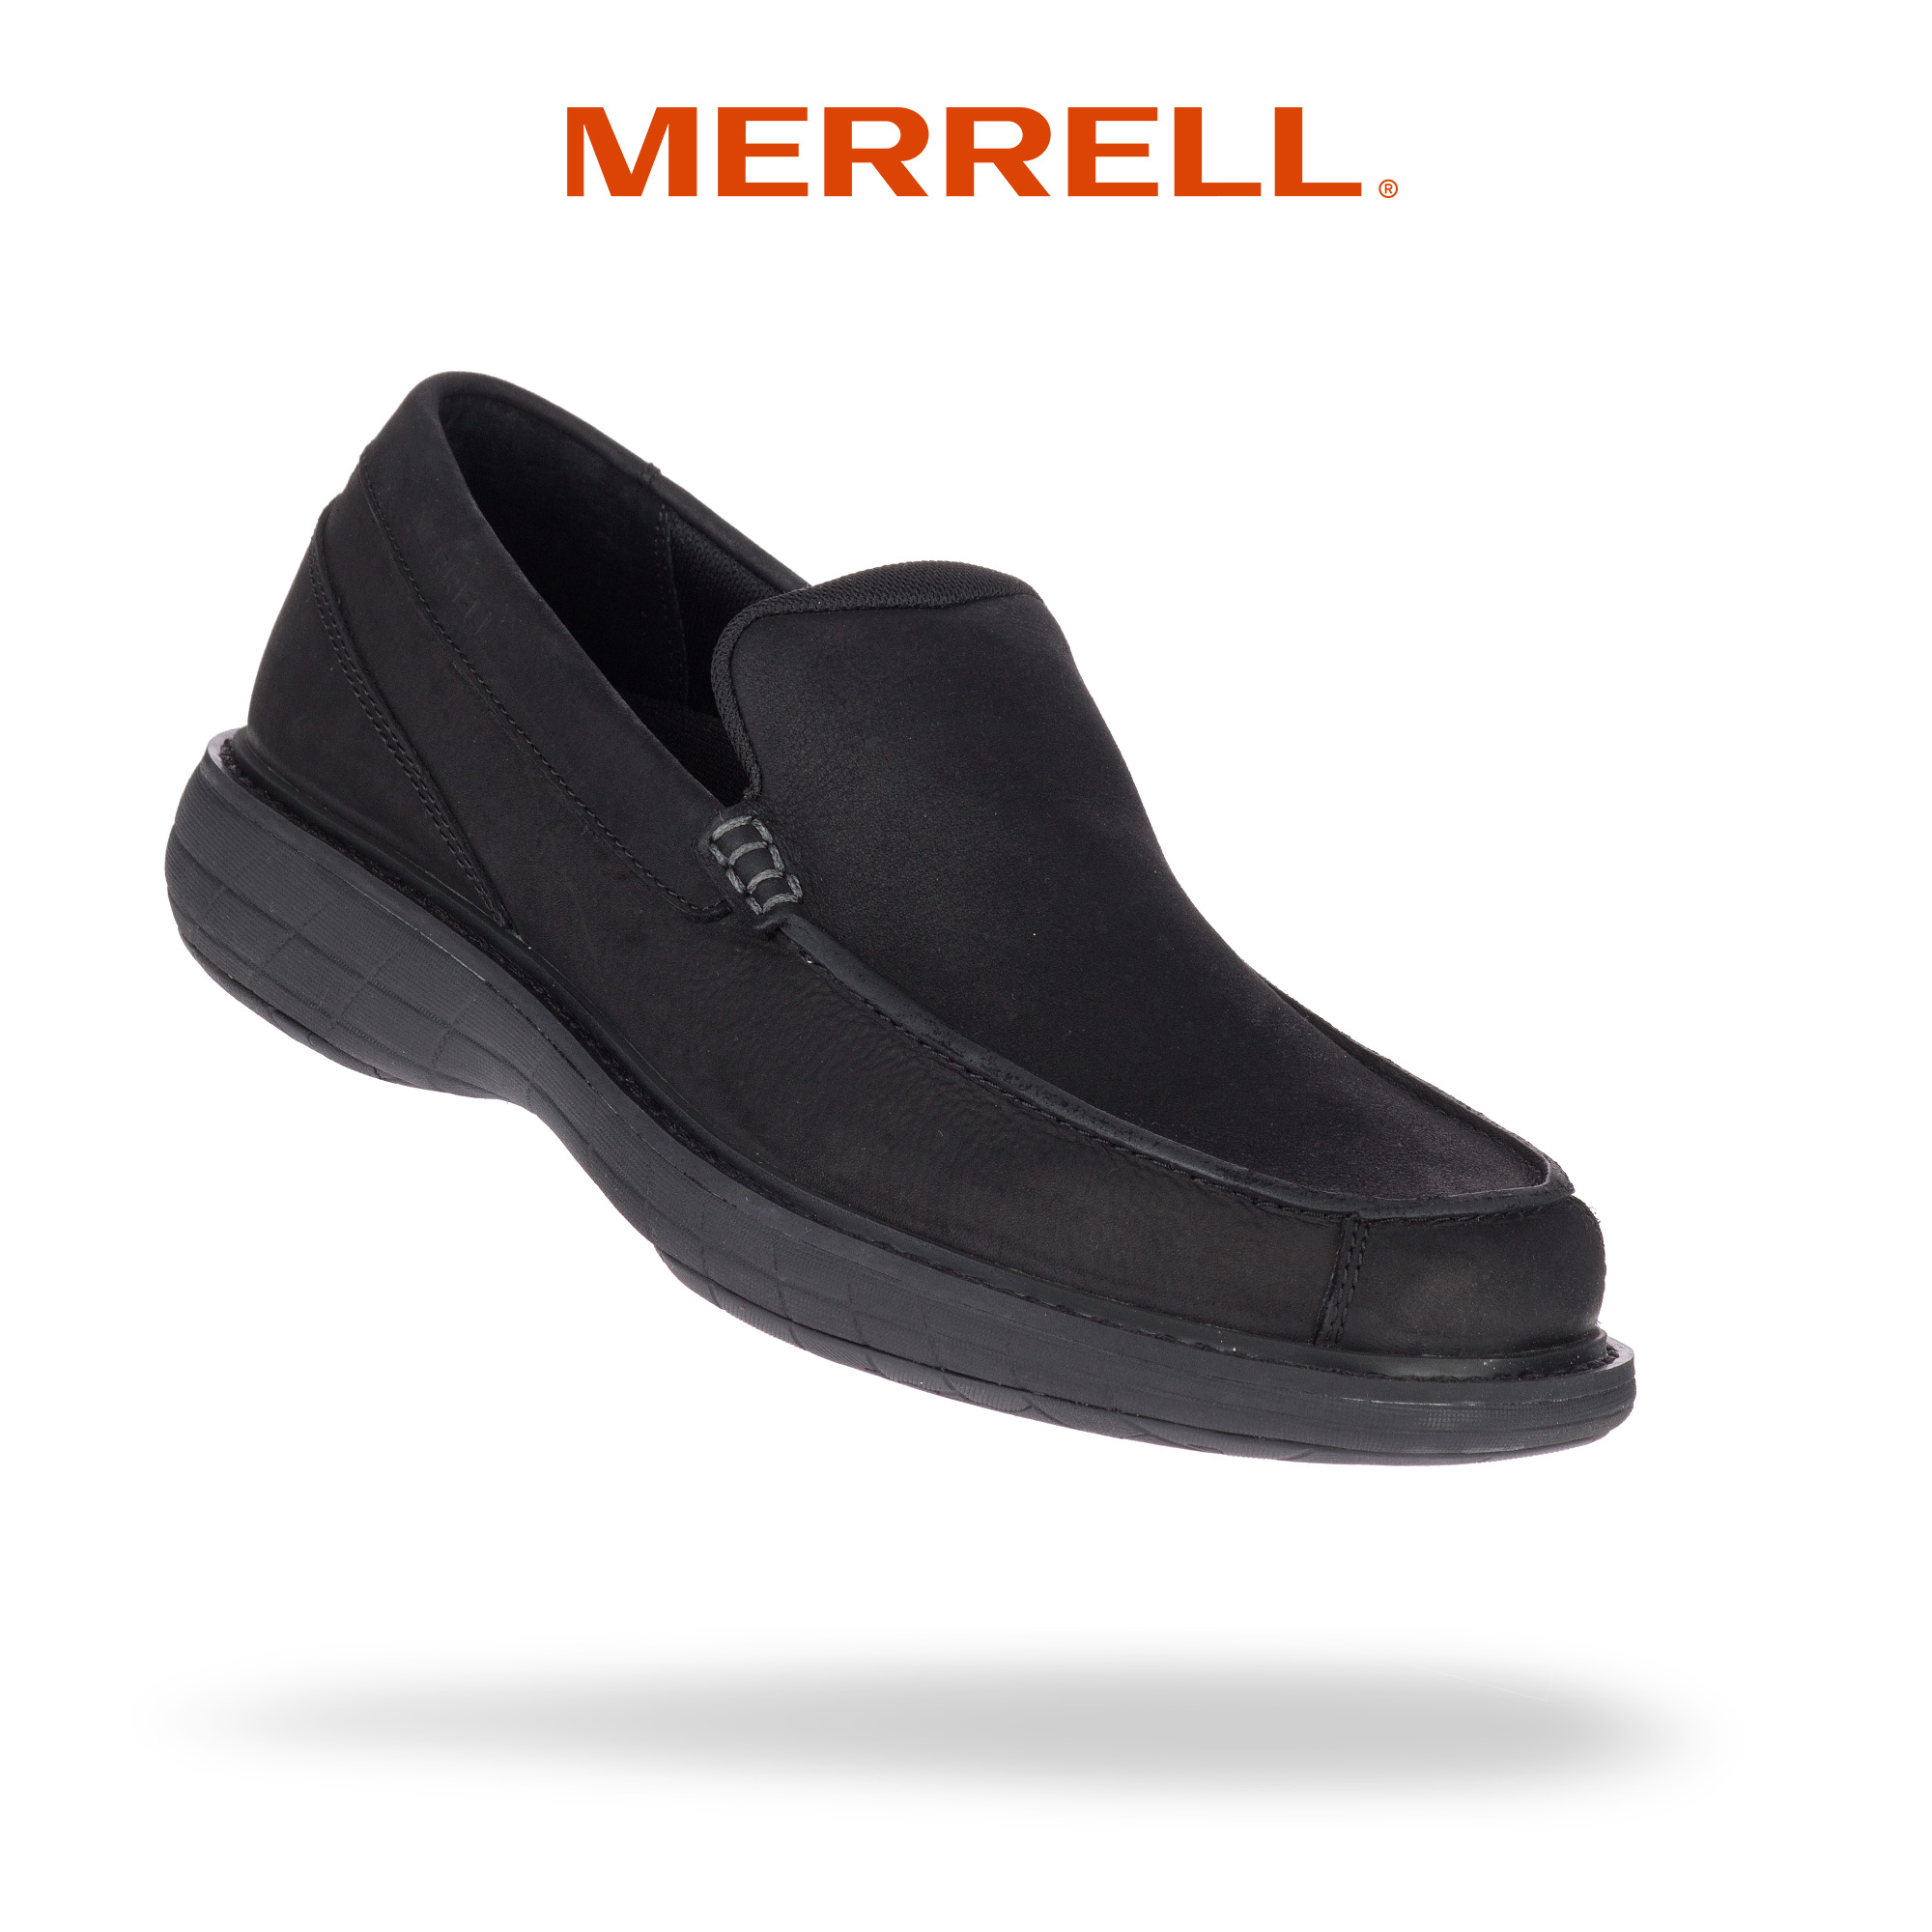 merrell men's casual shoes